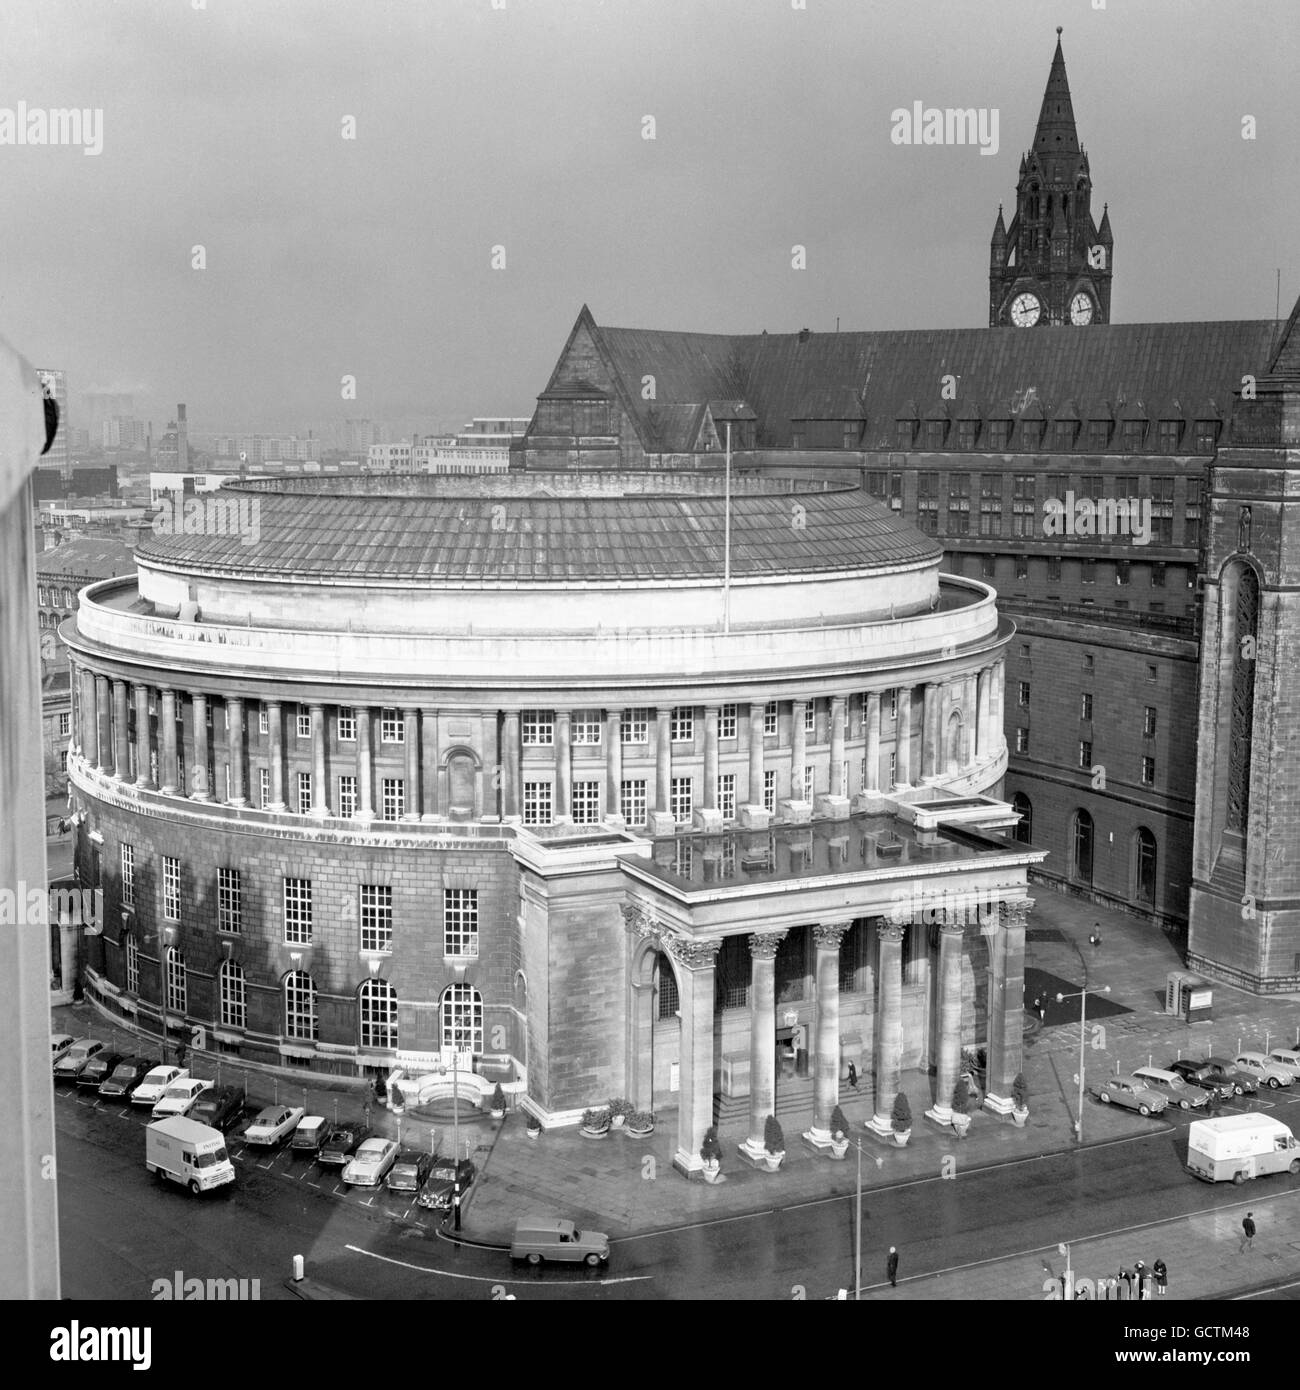 Ein beeindruckendes Gebäude mit korinthischem Portikus und Kolonnaden aus römischen dorischen Säulen ist der spektakuläre Wissenskreis von Manchester, die Central Library, die 1934 auf dem Petersplatz eröffnet wurde. Stockfoto